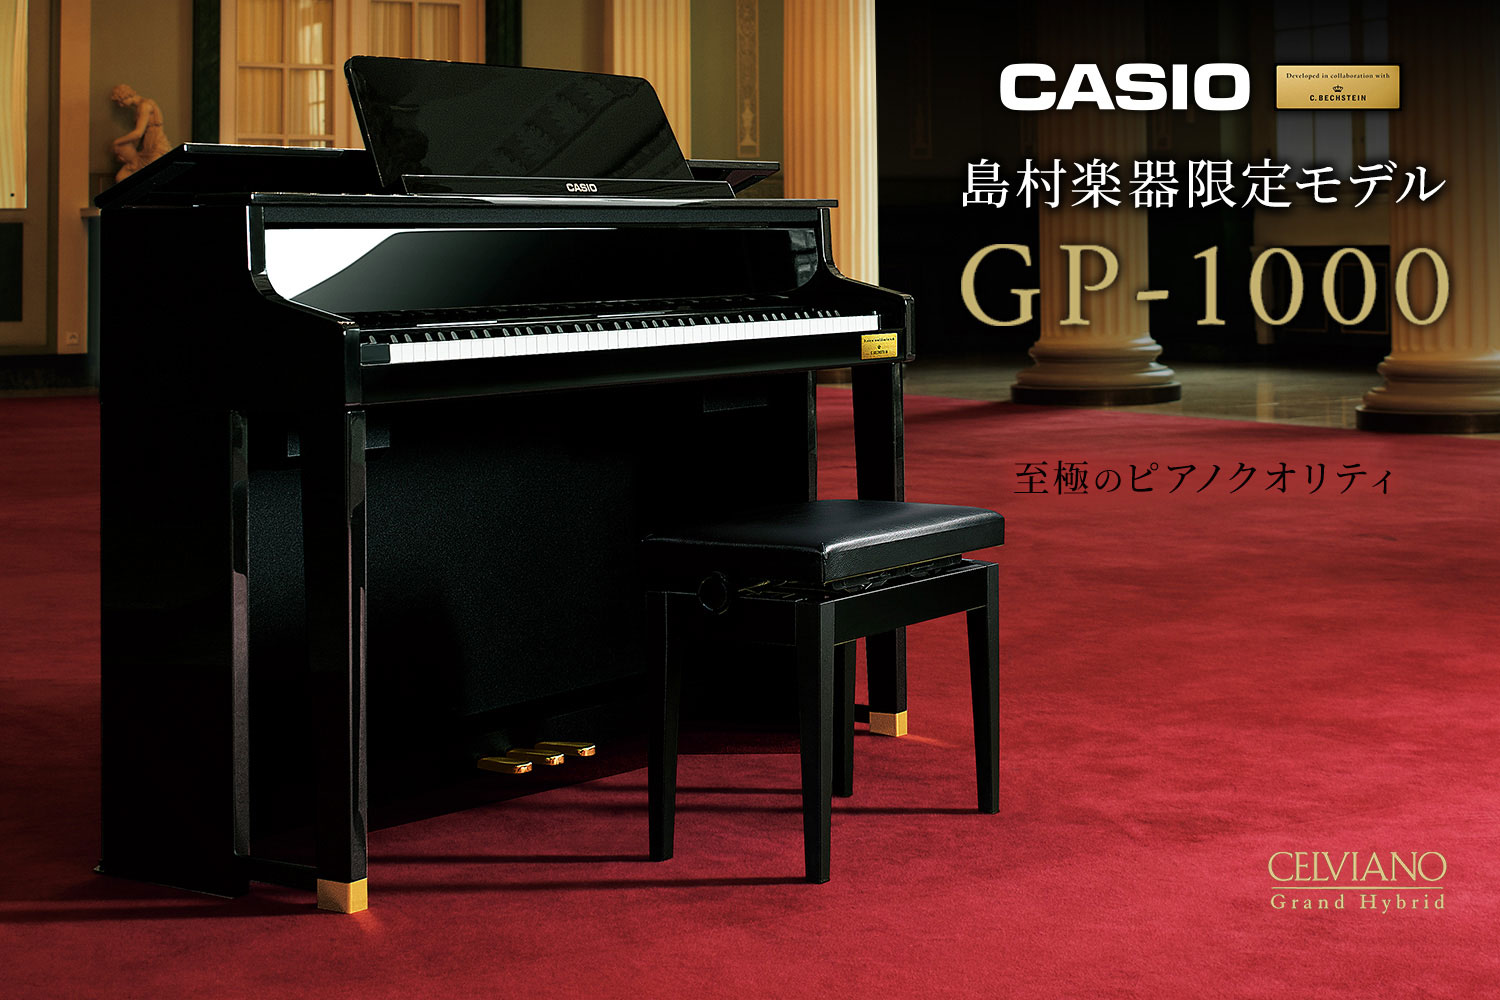 *グランドピアノに徹底的にこだわった至極のクオリティ ピアノ作りの伝統を徹底的に研究、そしてカシオの革新的なデジタル技術を投入した、カシオセルヴィアーノグランドハイブリッドシリーズ。[!!世界有数の歴史あるピアノメーカーであるC.ベヒシュタイン社と共同開発した音や鍵盤を搭載!!]し、2015年の発売 […]